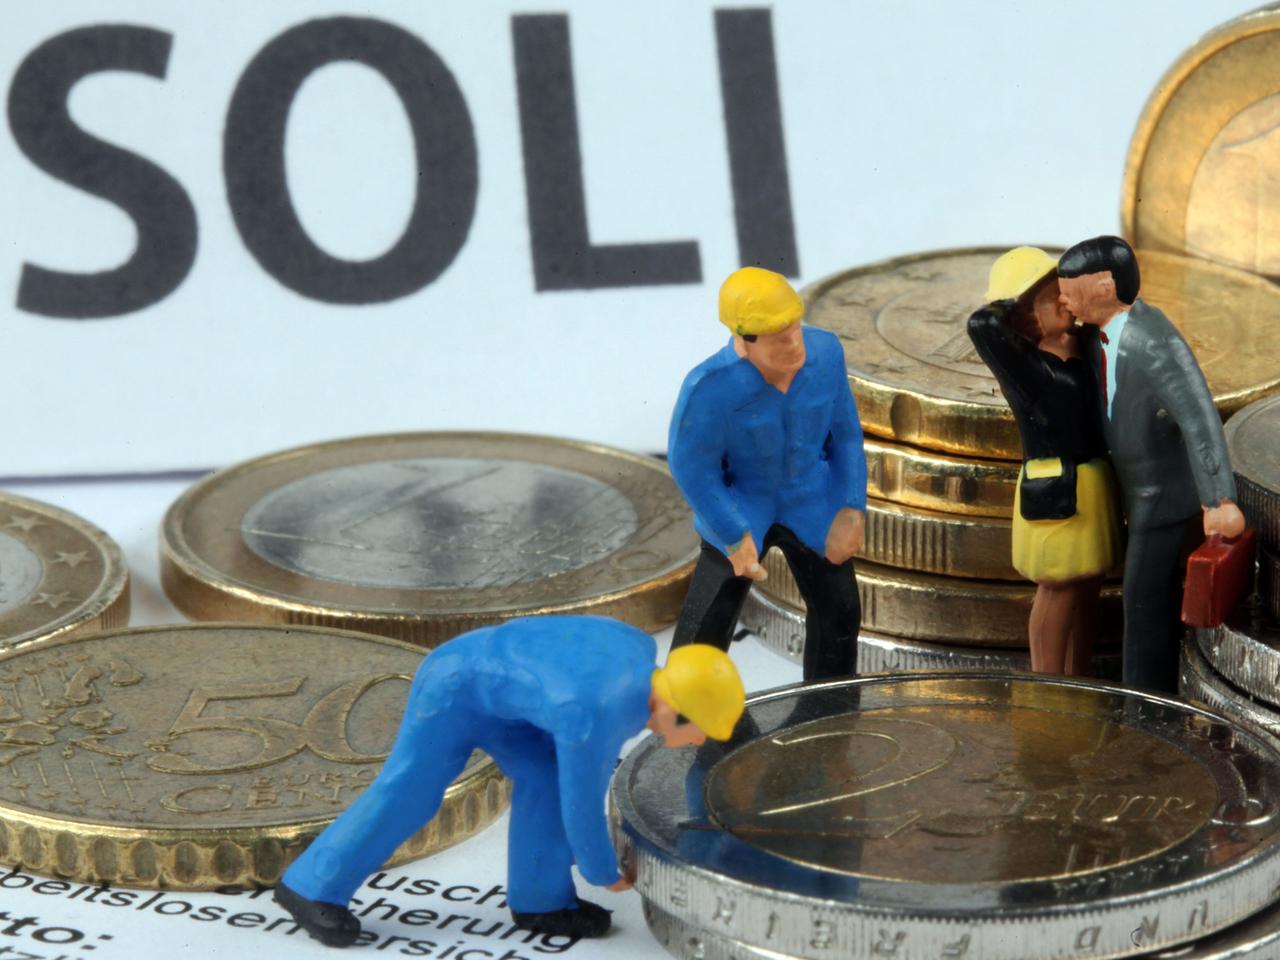 Modellfiguren inmitten von Euromünzen, im Hintergrund steht "Soli" geschrieben.